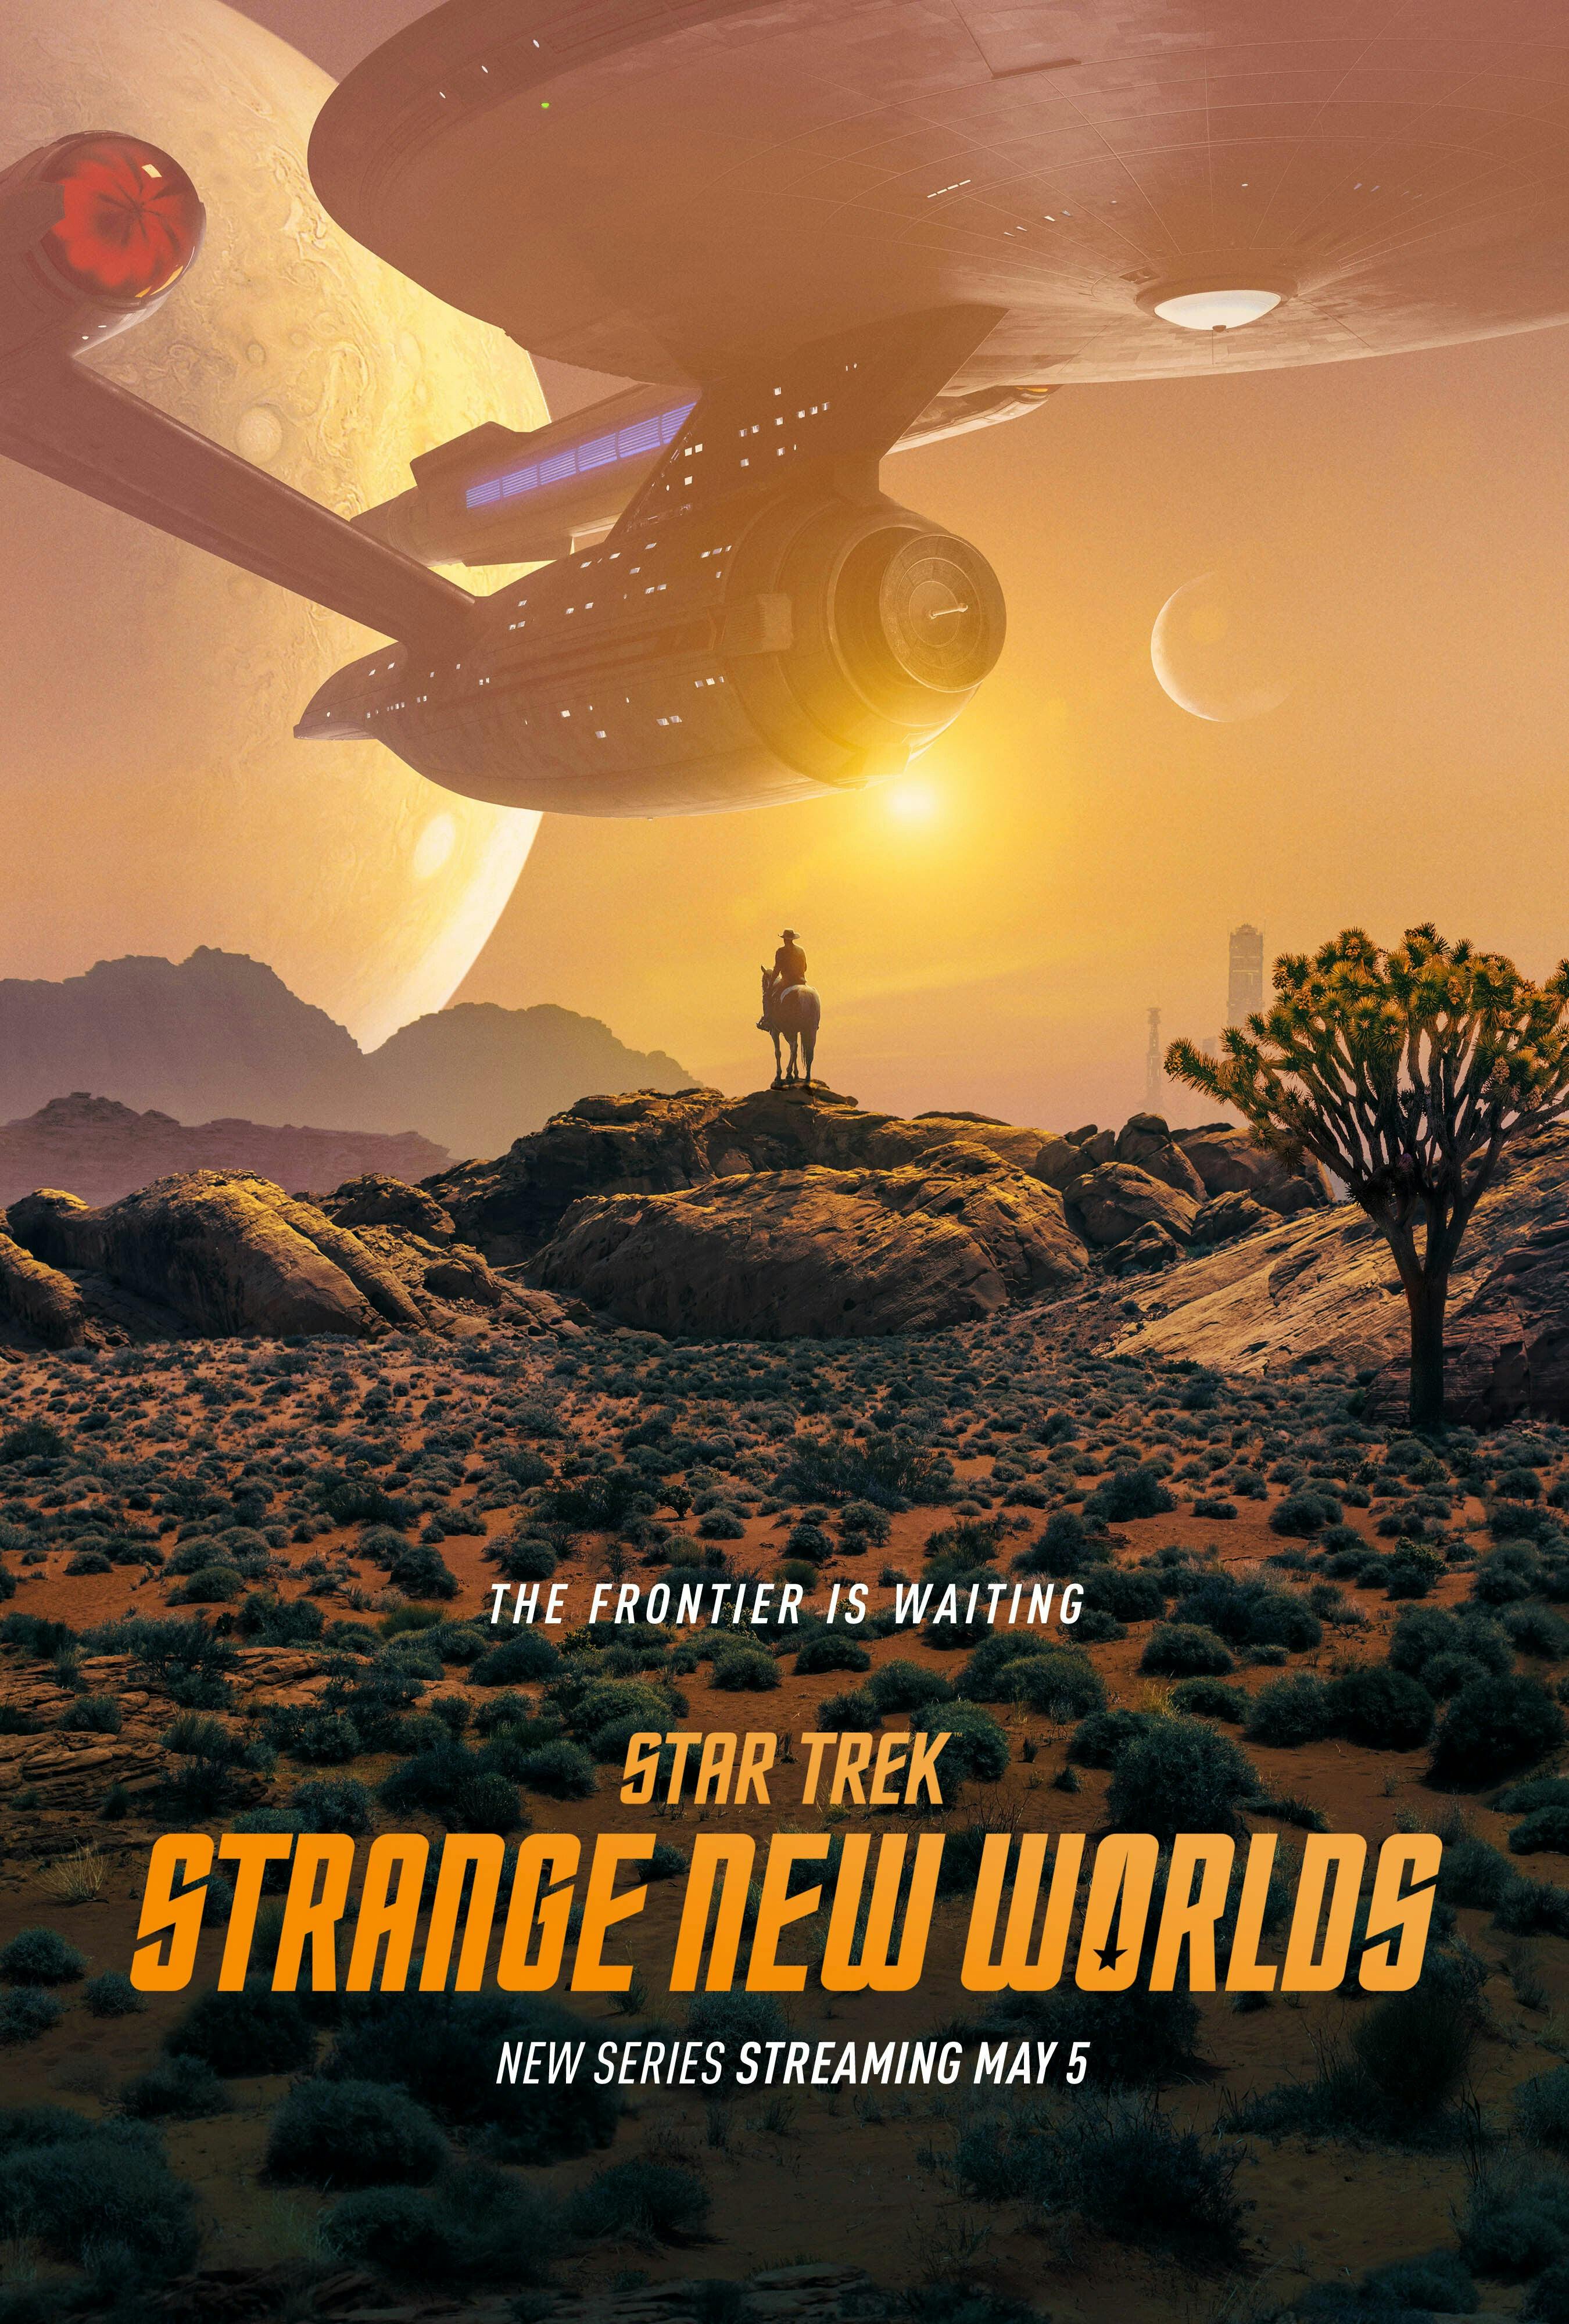 Key promotional art poster for Season 1 of Star Trek: Strange New Worlds